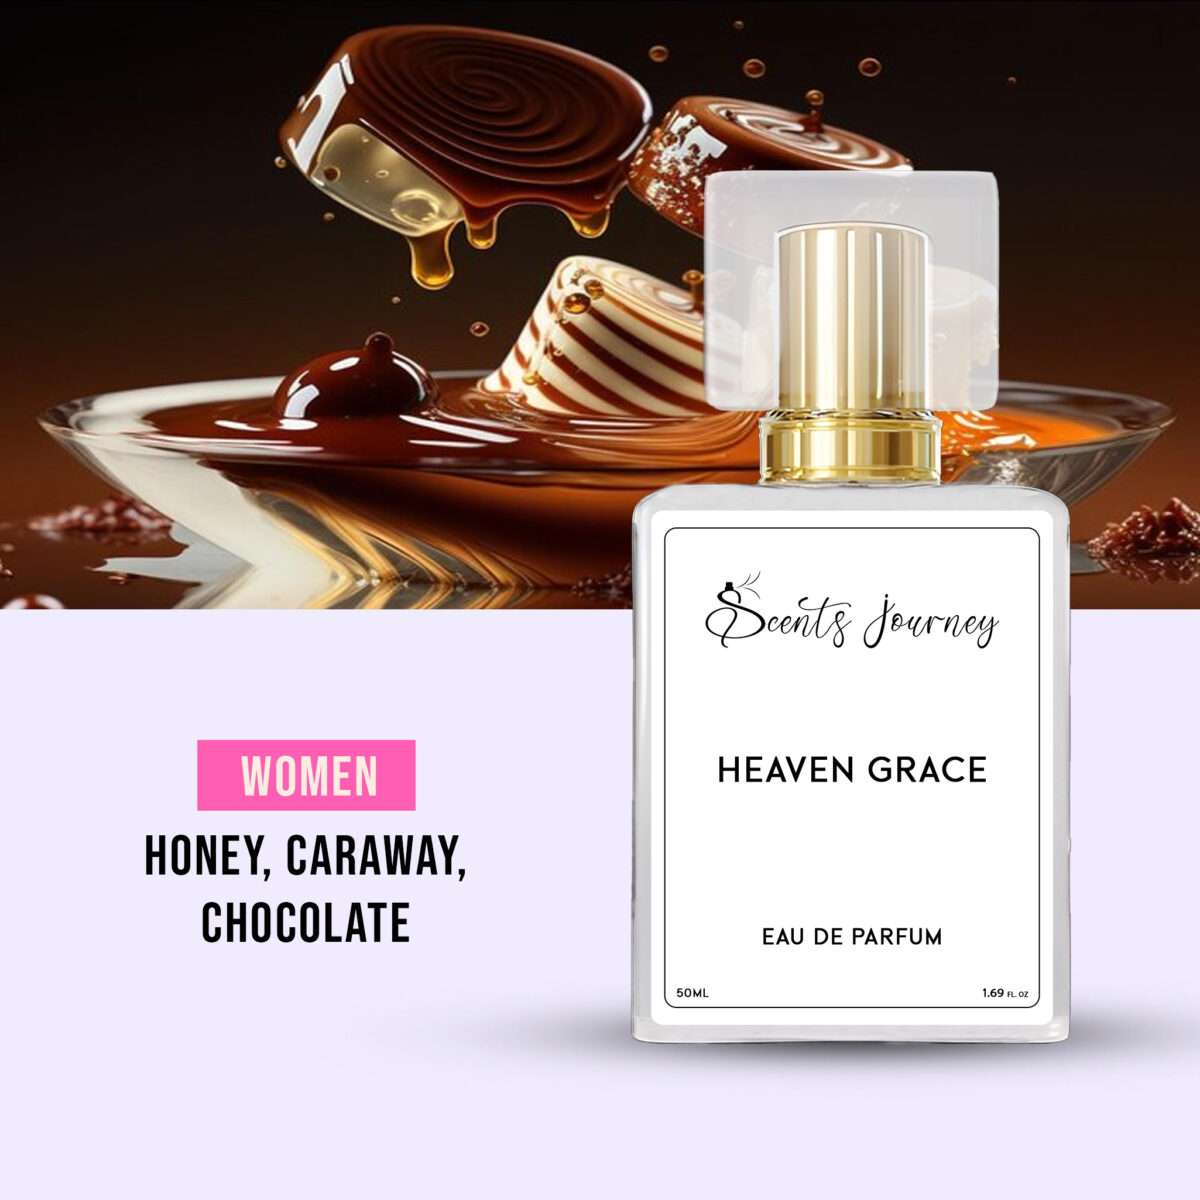 Heaven Grace fragrance